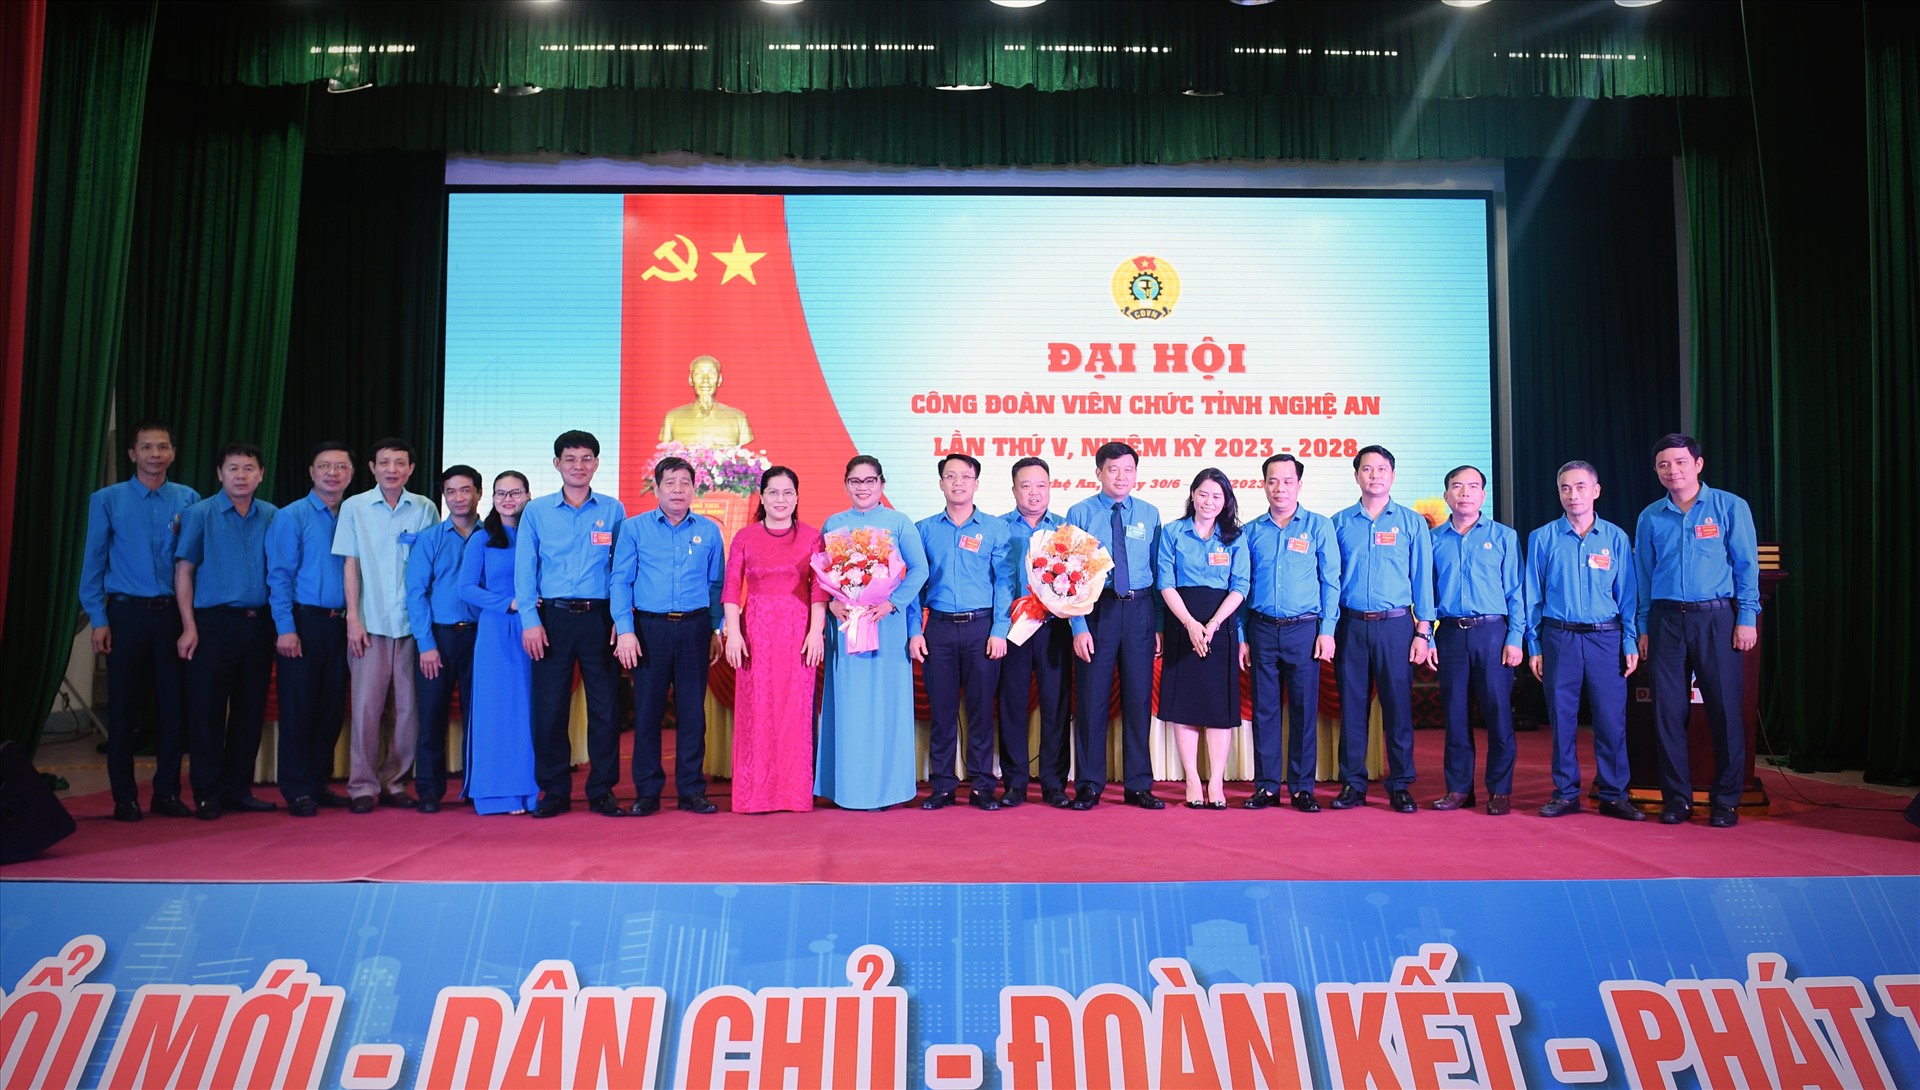 Ra mắt Ban Chấp hành Công đoàn Viên chức Nghệ An nhiệm kỳ 2023 -2028. Ảnh: Quỳnh Trang